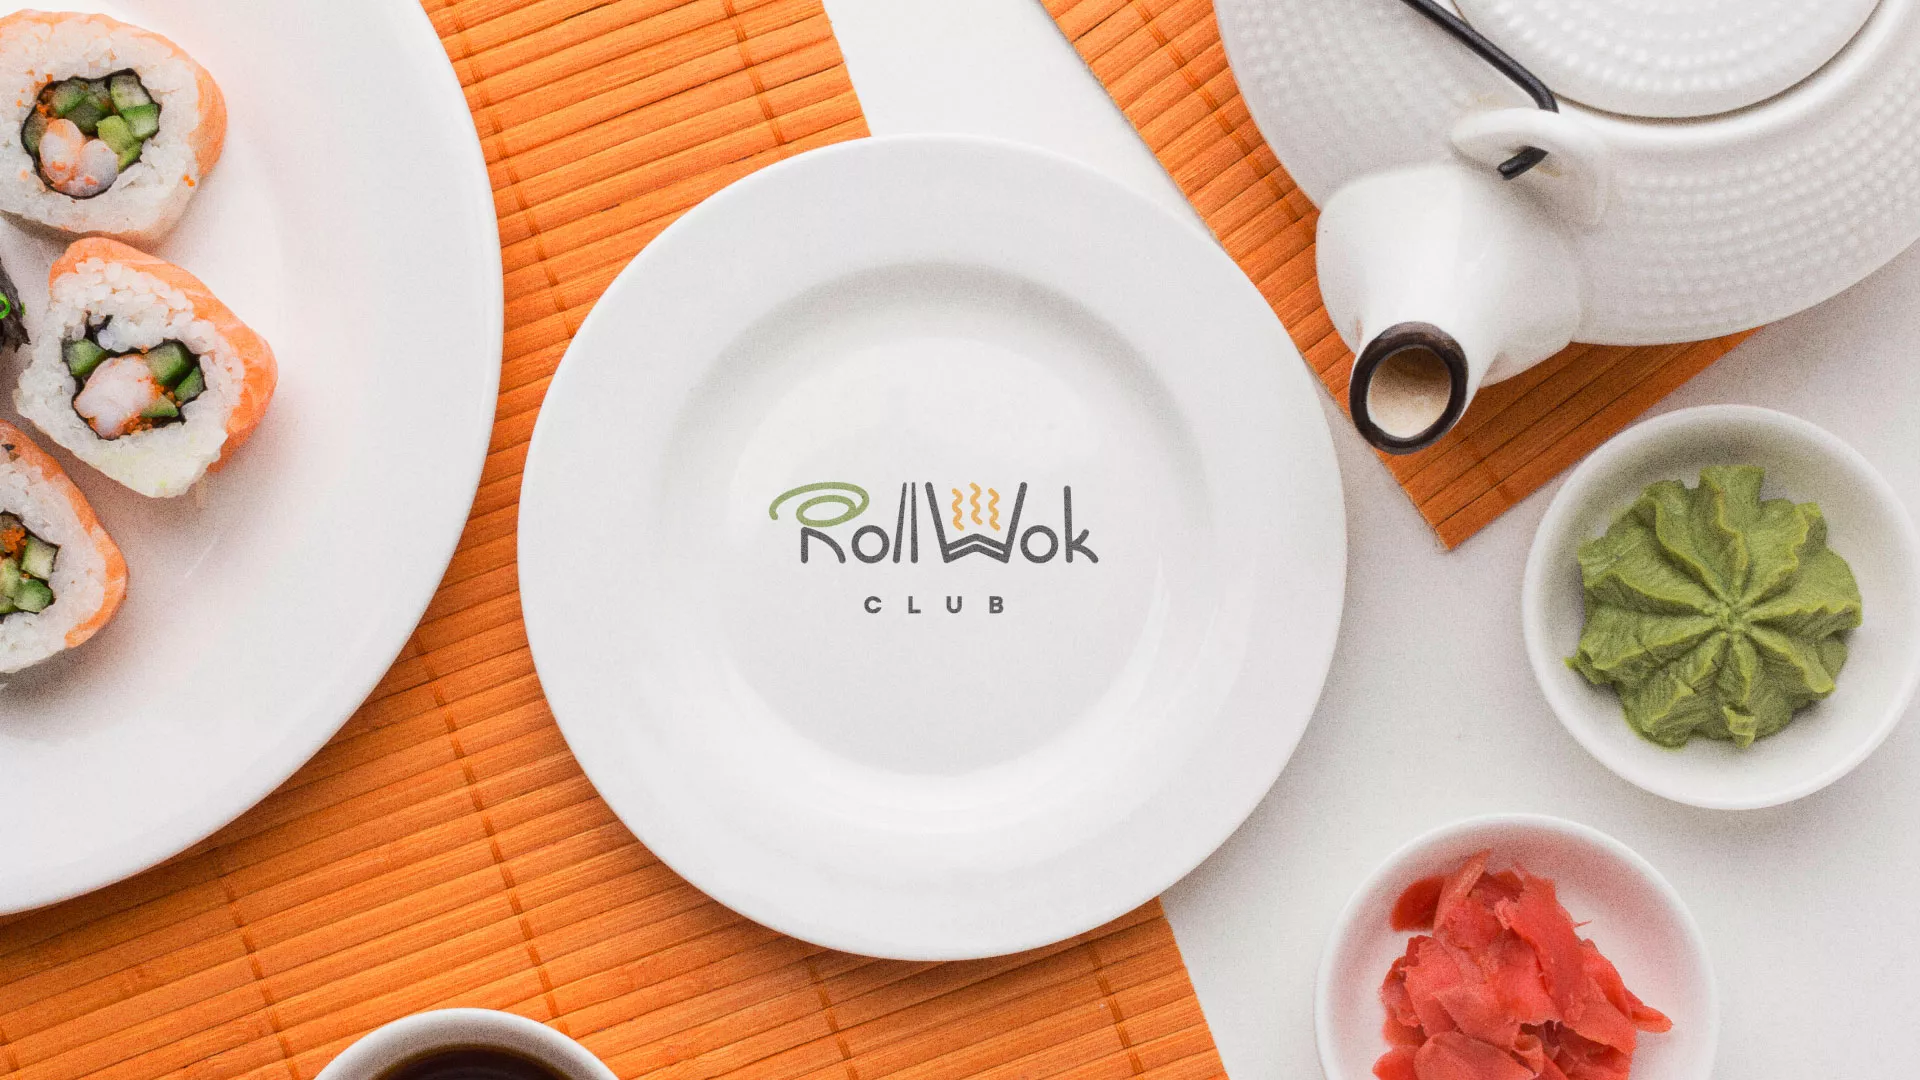 Разработка логотипа и фирменного стиля суши-бара «Roll Wok Club» в Ряжске